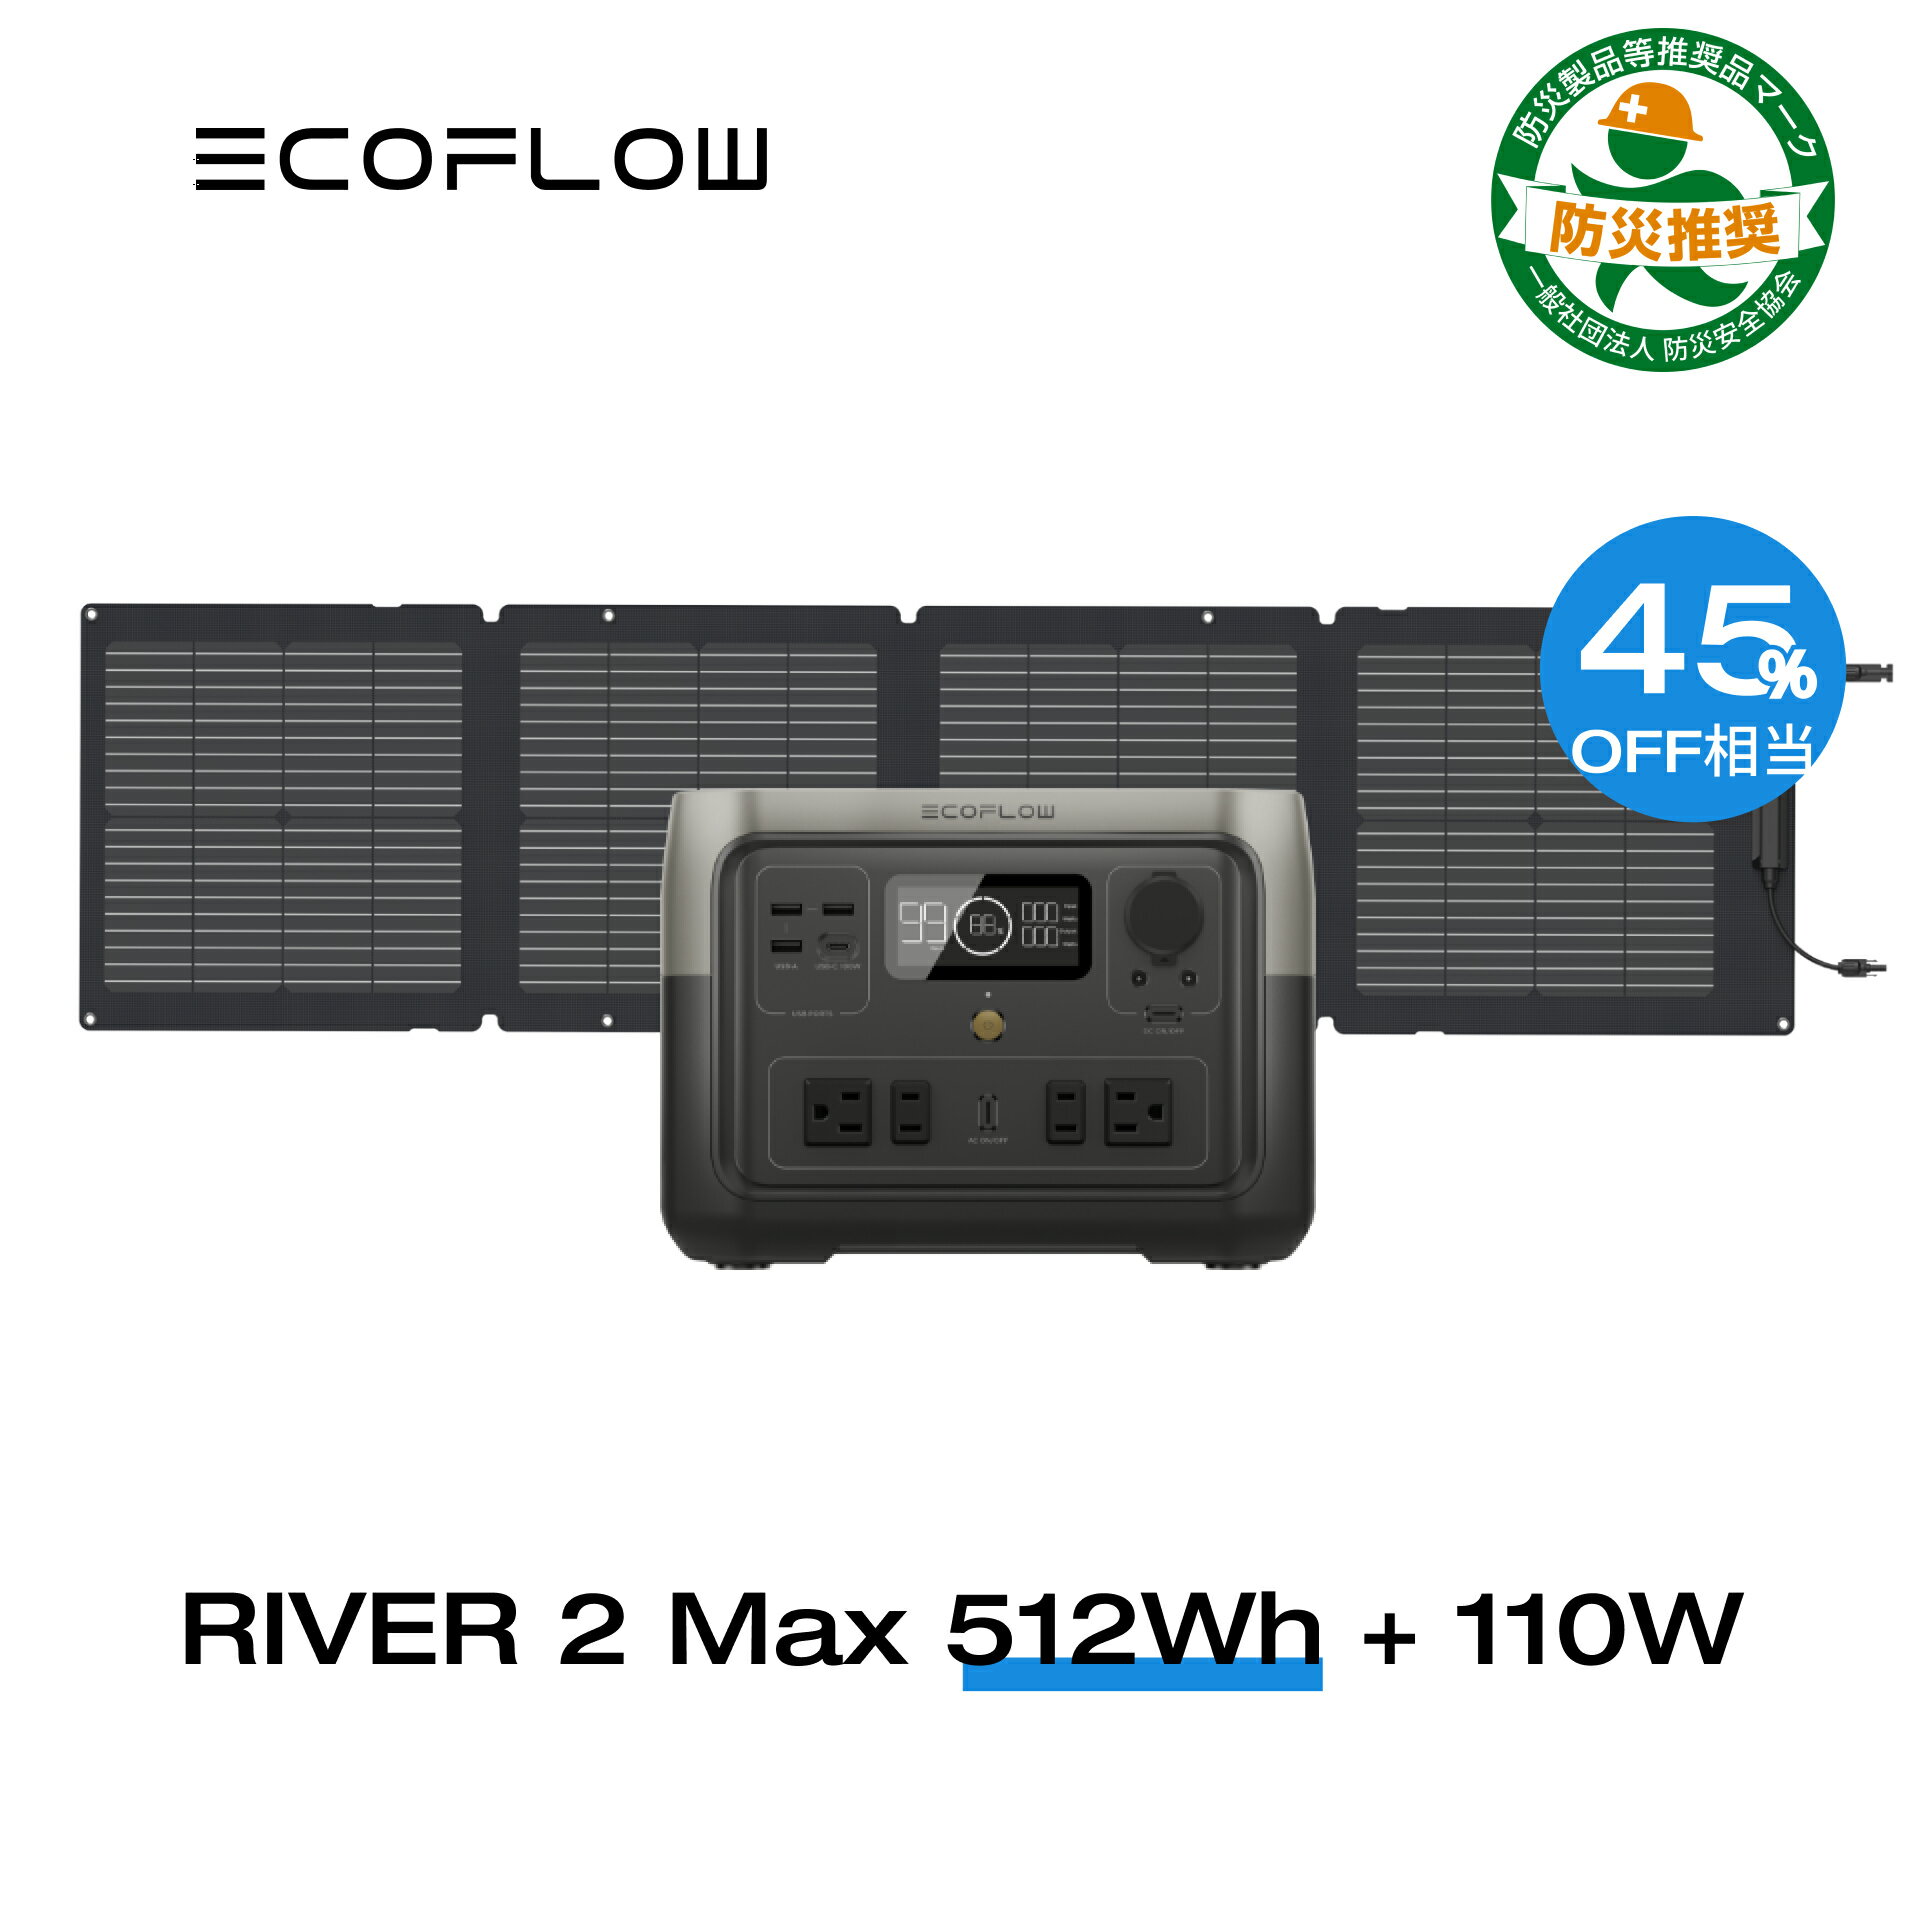 【クーポン併用で52,000円! 6/4 20:00~】 EcoFlow ポータブル電源 ソーラーパネル セット RIVER 2 Max 512Wh+110W リ…